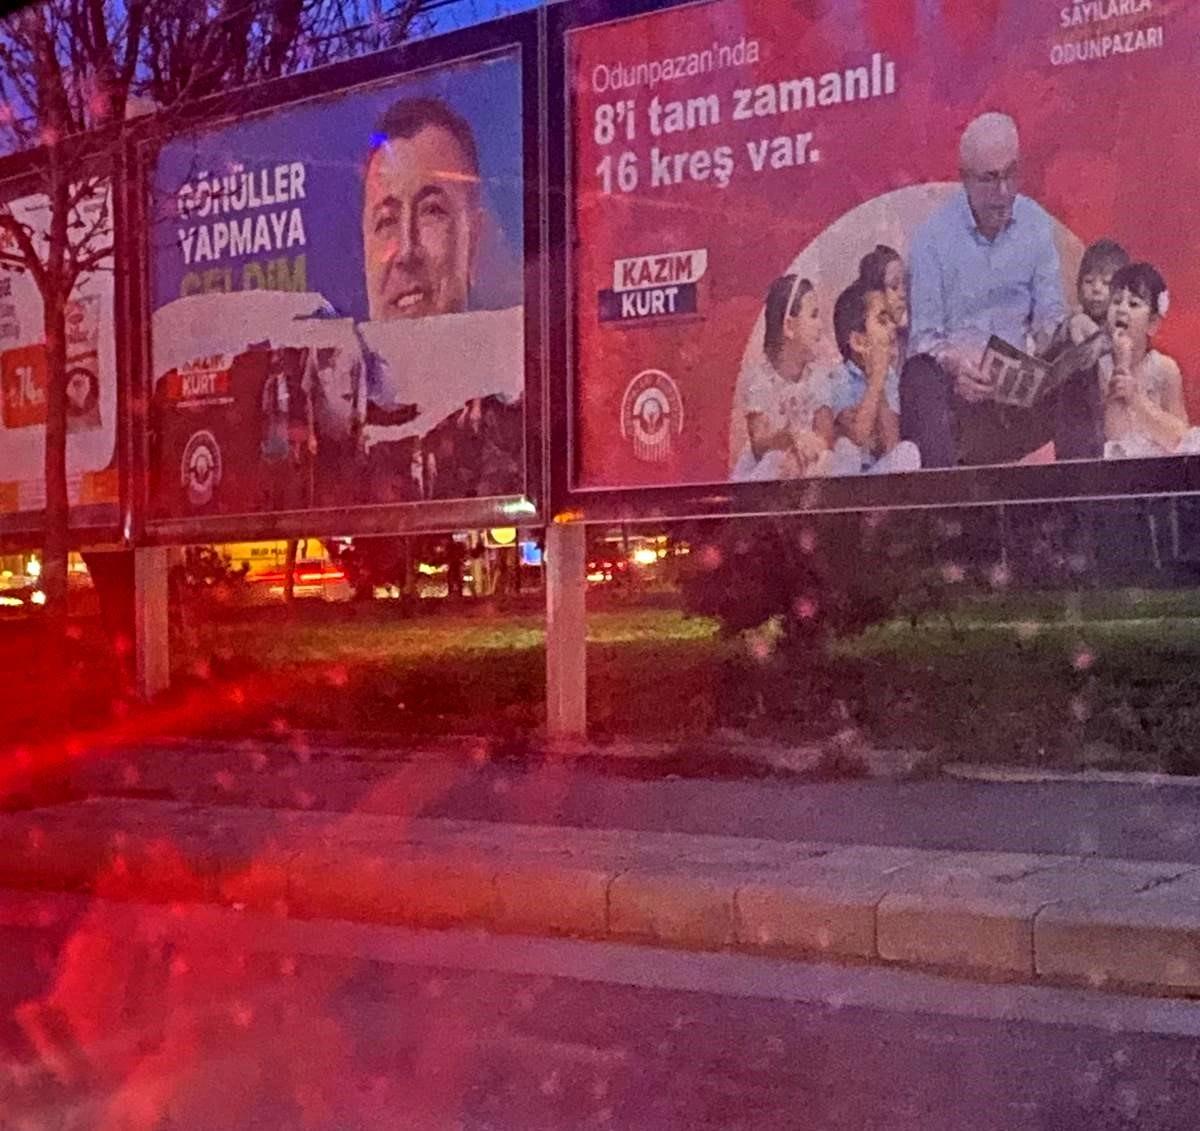 AK Parti Odunpazarı Belediye Başkan Adayı Özkan Alp\'in Pankartlarına Saldırı